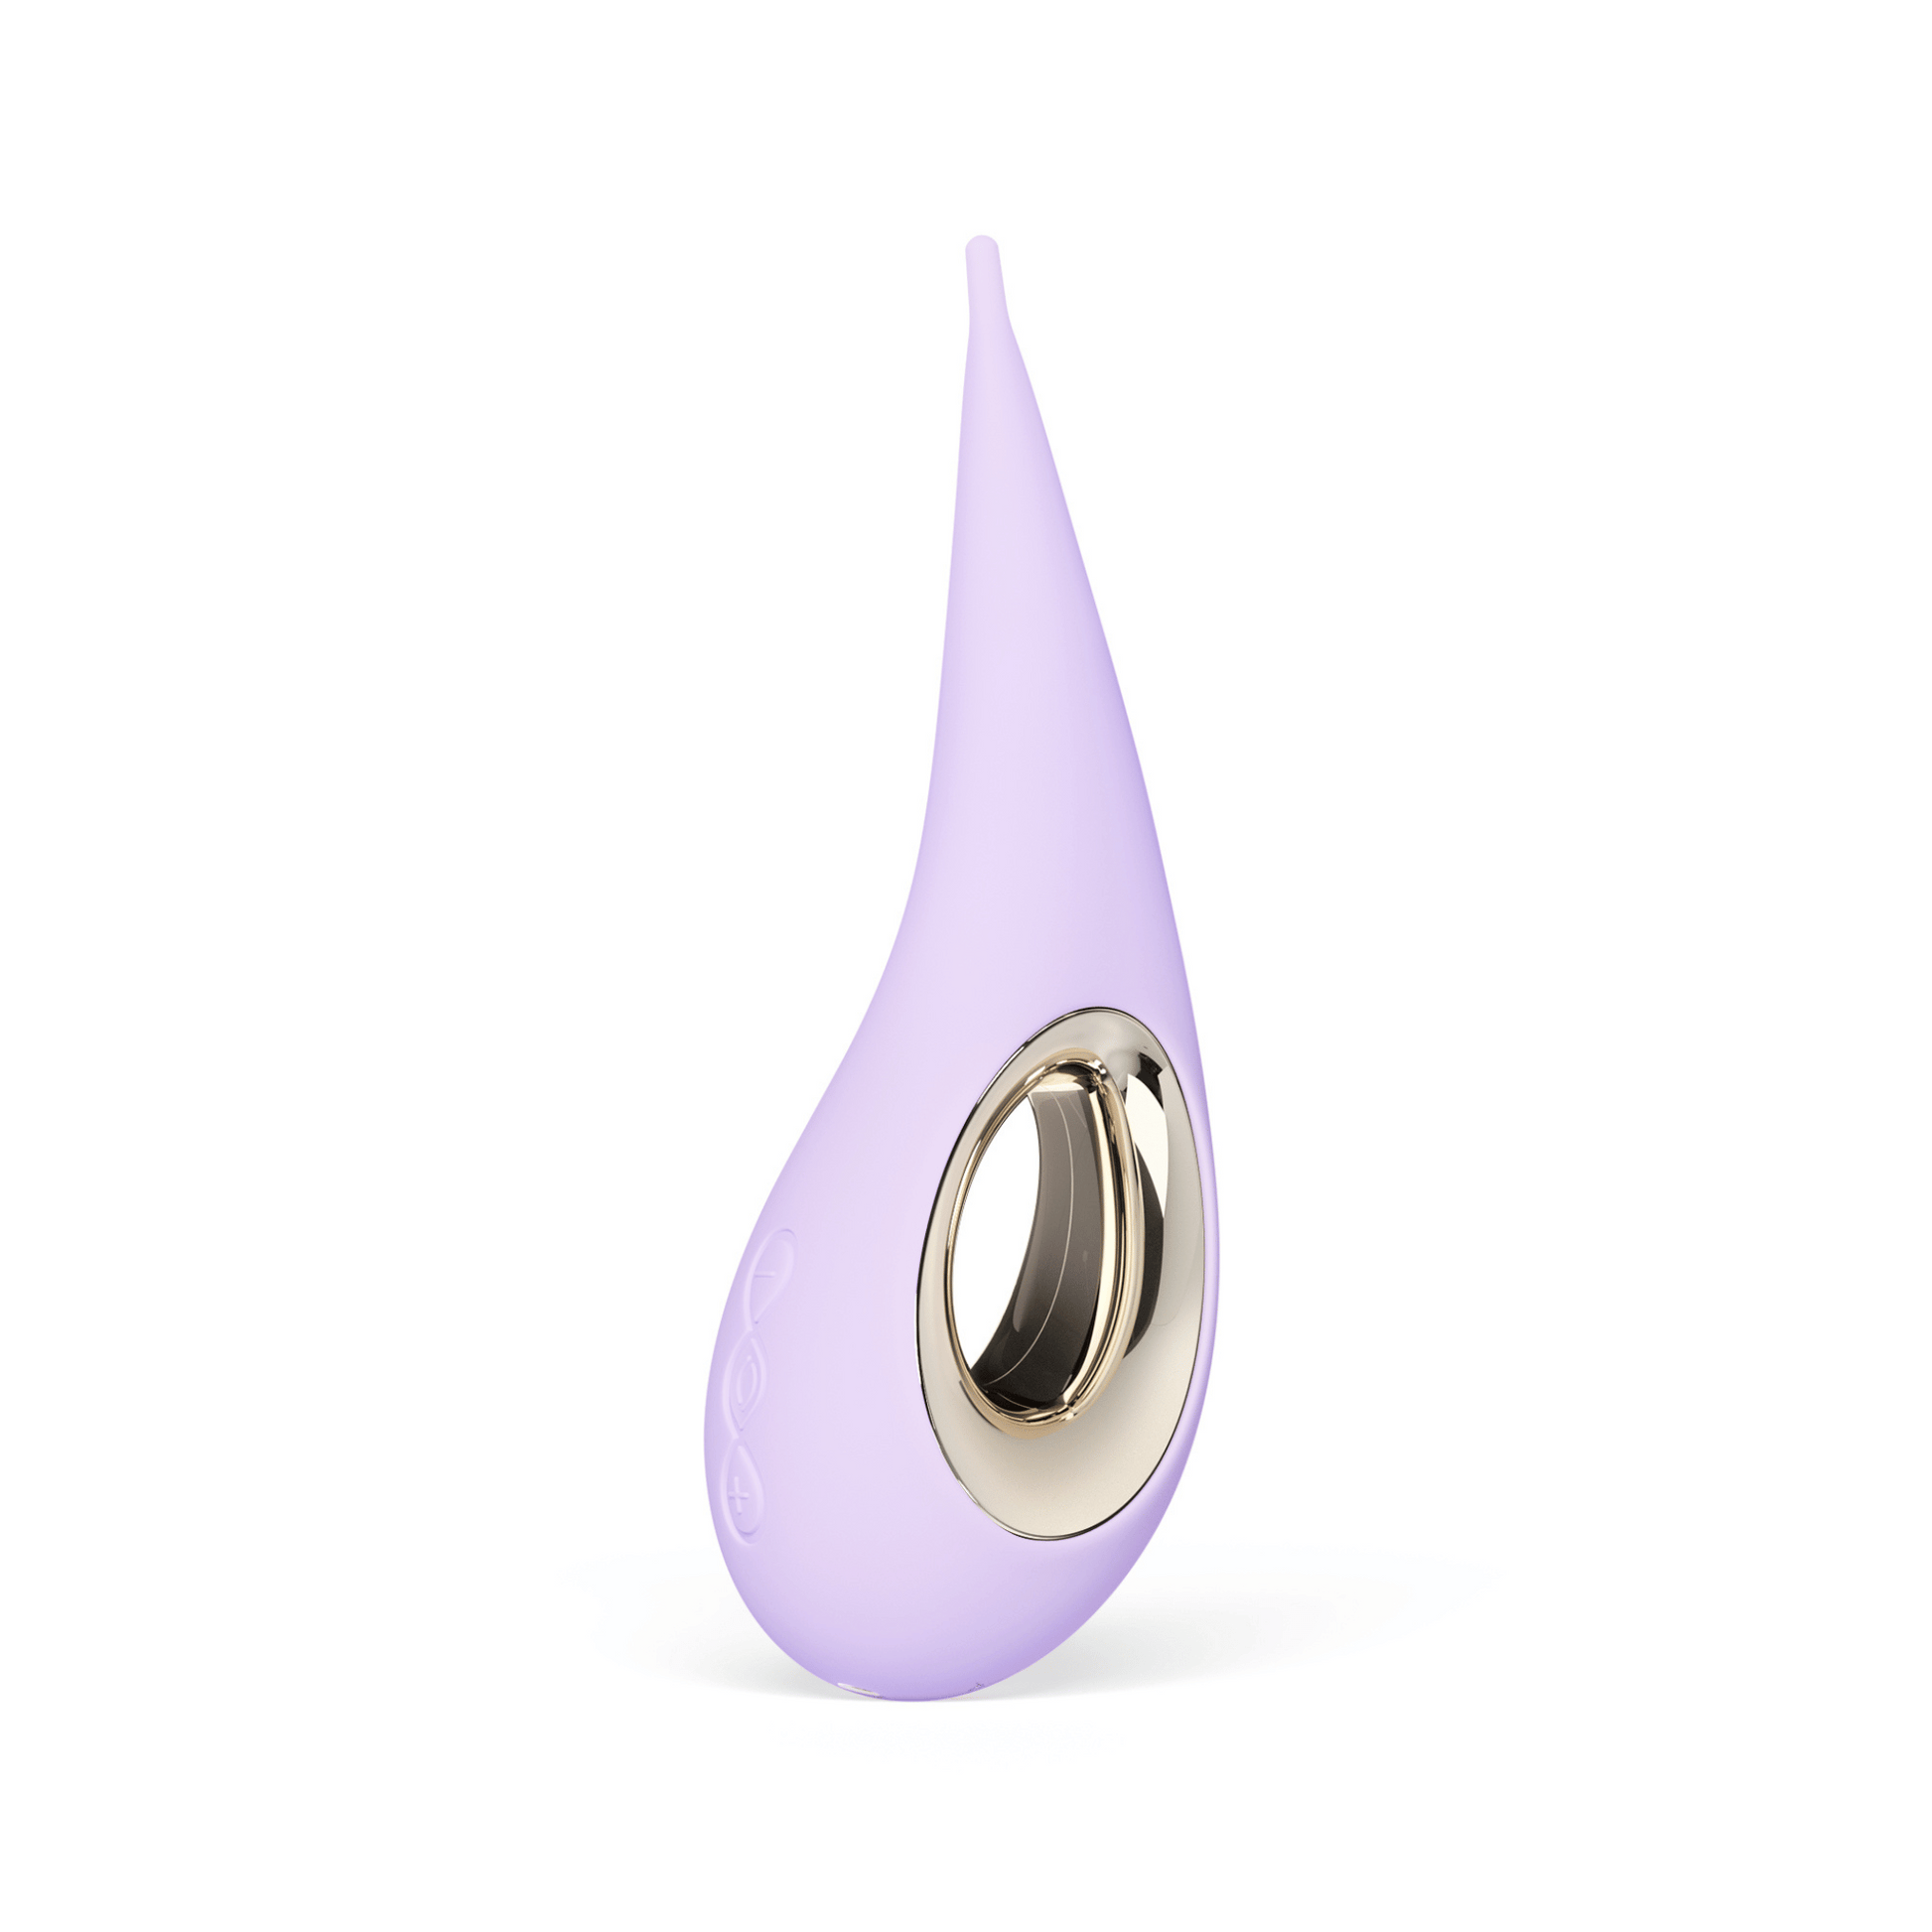 Lelo Dot violet, stimulateur clitoridien élégant avec pointe fine, offert par OhMyGodz.fr pour une indulgence sensorielle raffinée.